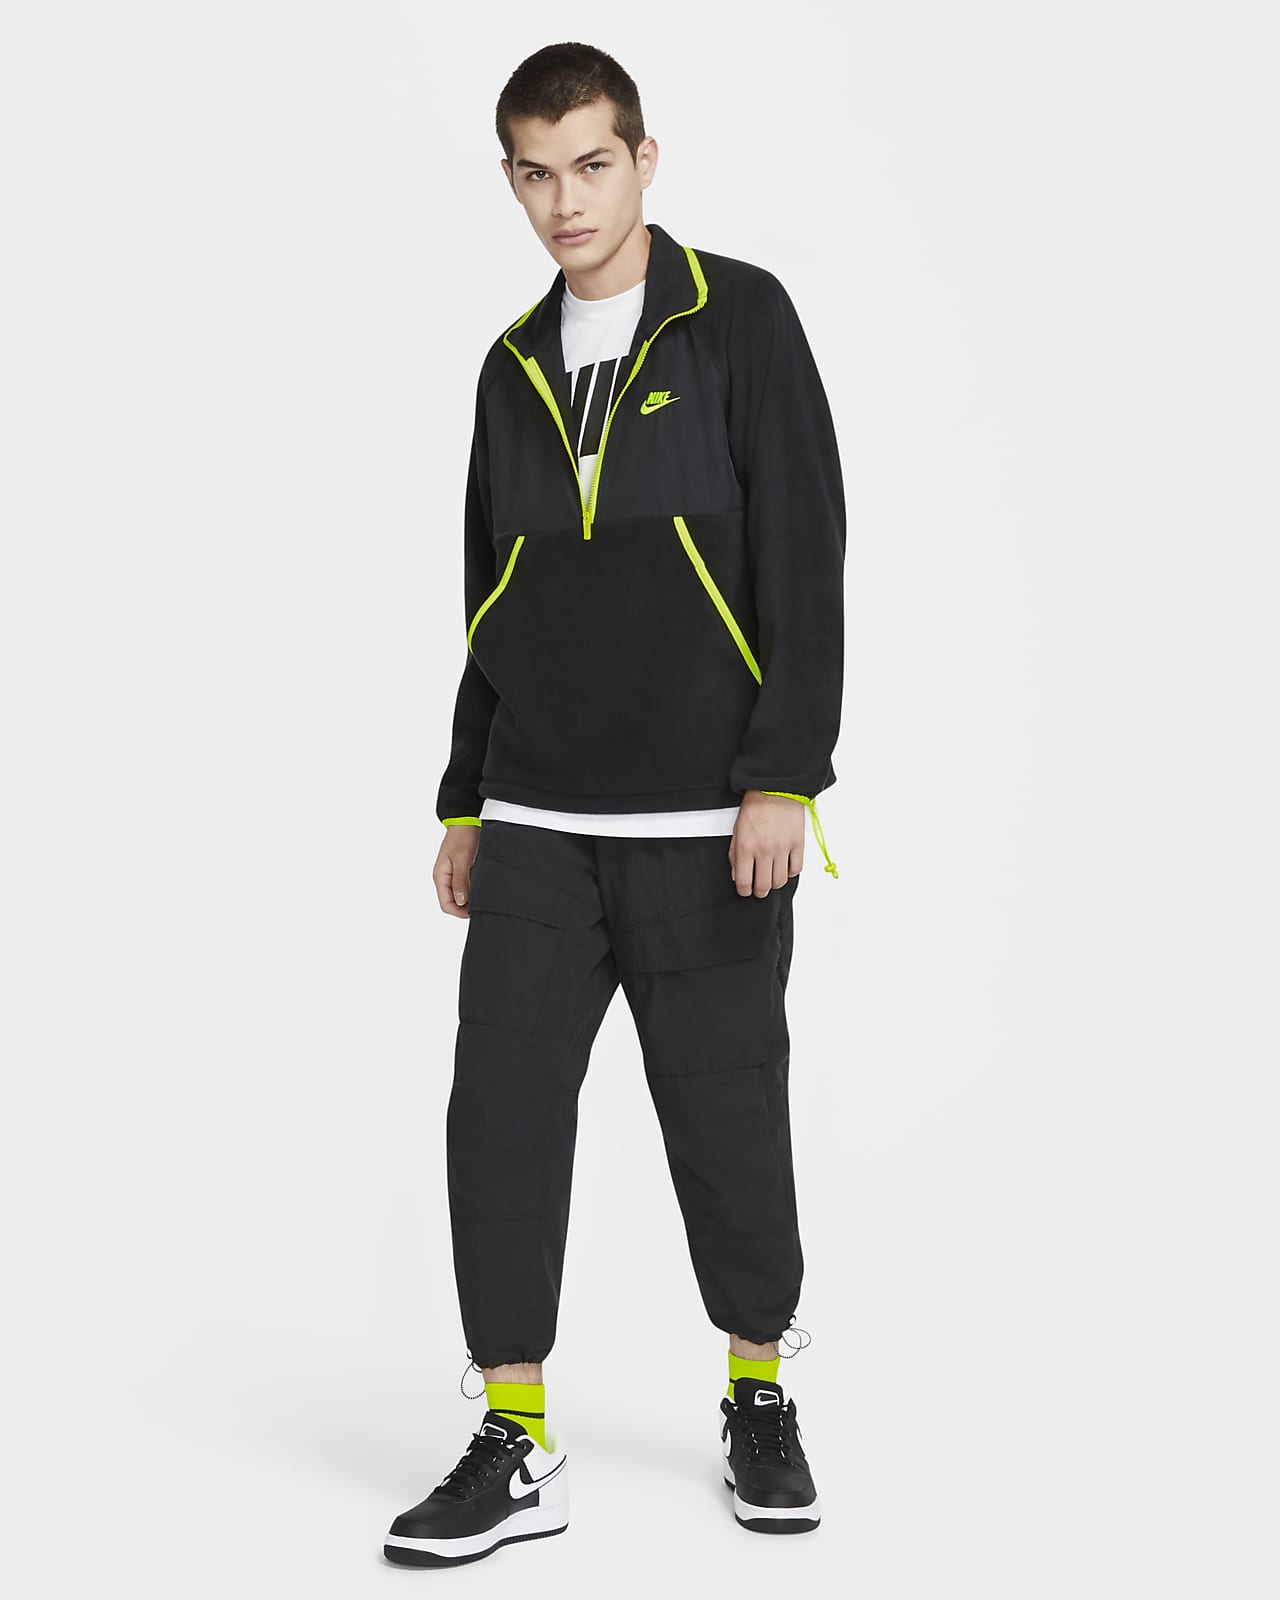 Ontrouw Meerdere Fonetiek Nike Sportswear Men's Winterized Half-Zip Top. Nike.com